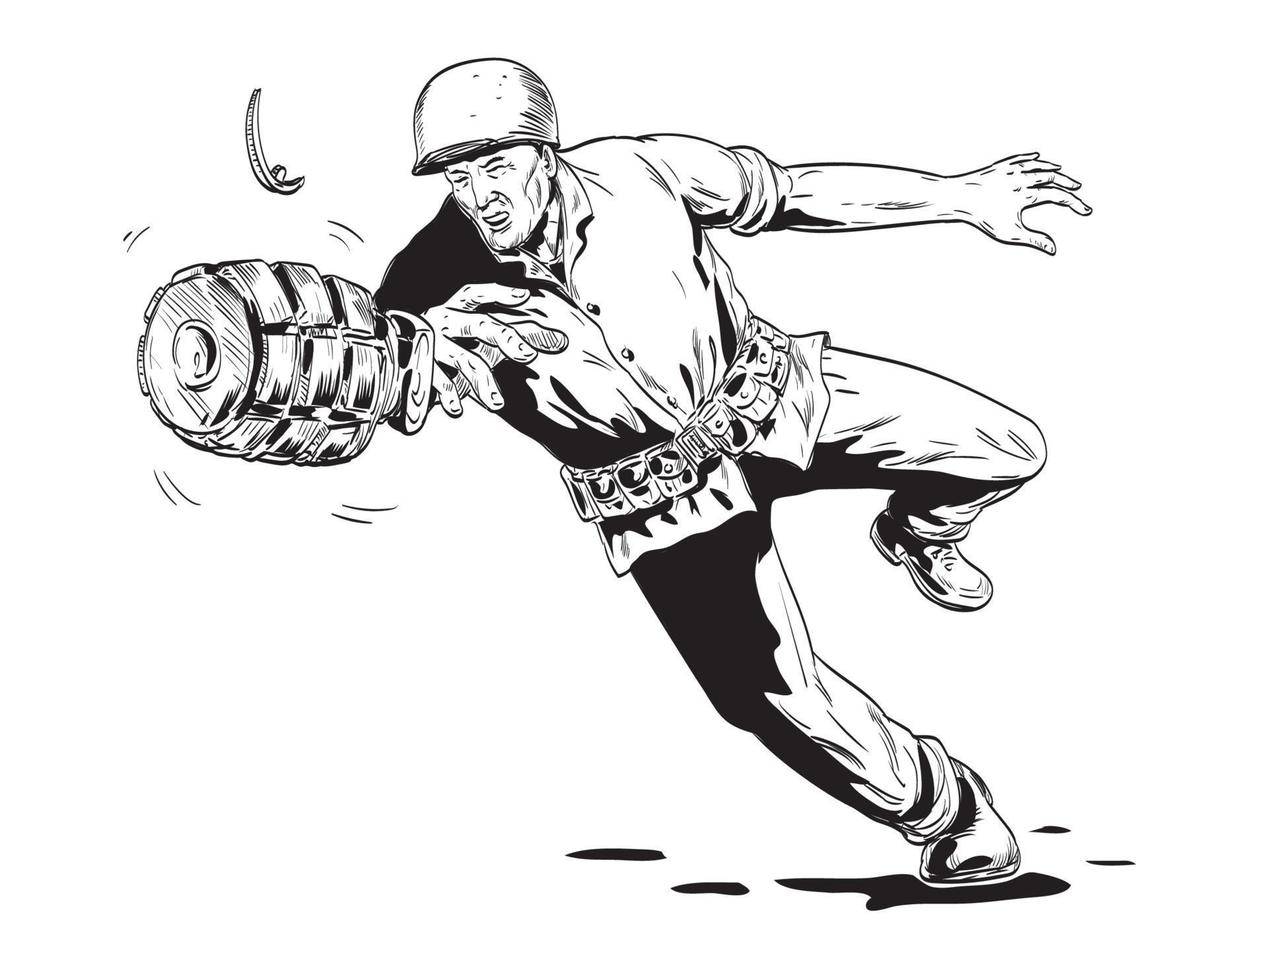 mundo guerra dois americano gi soldado jogando mão Grenade frente Visão histórias em quadrinhos estilo desenhando vetor